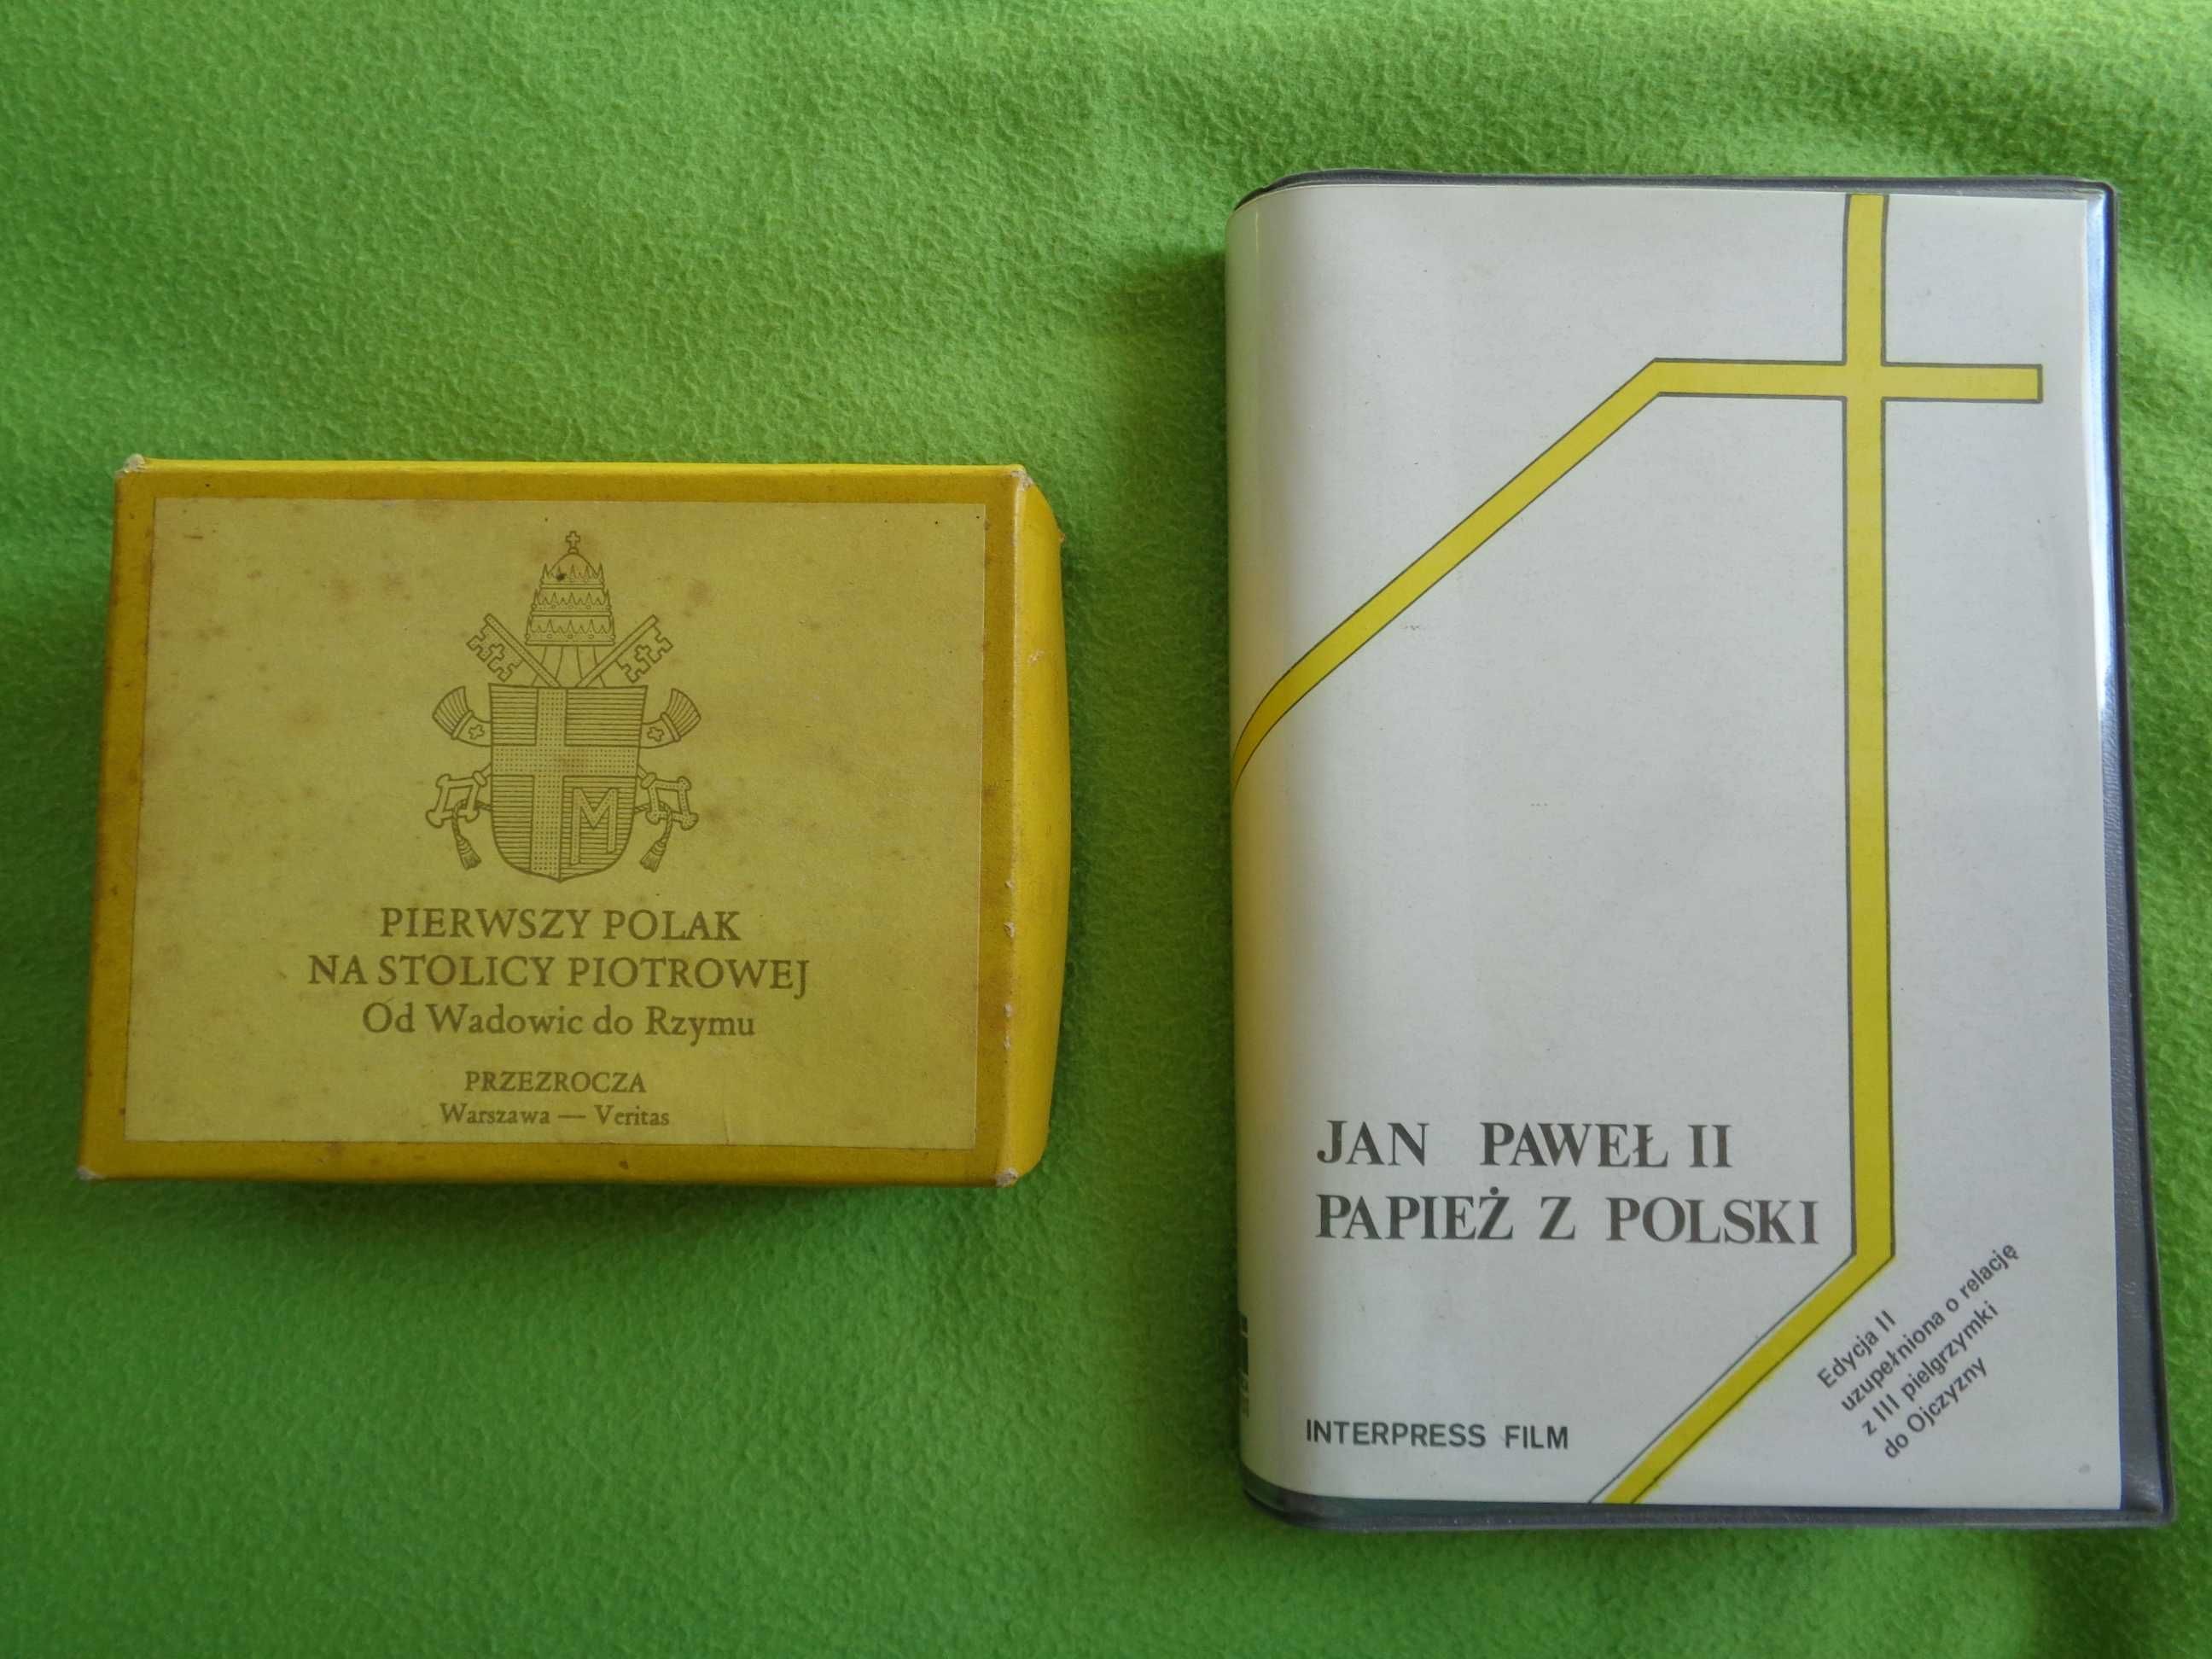 Jan Paweł II przezrocza ,,od Wadowic do Rzymu,,+ dvd